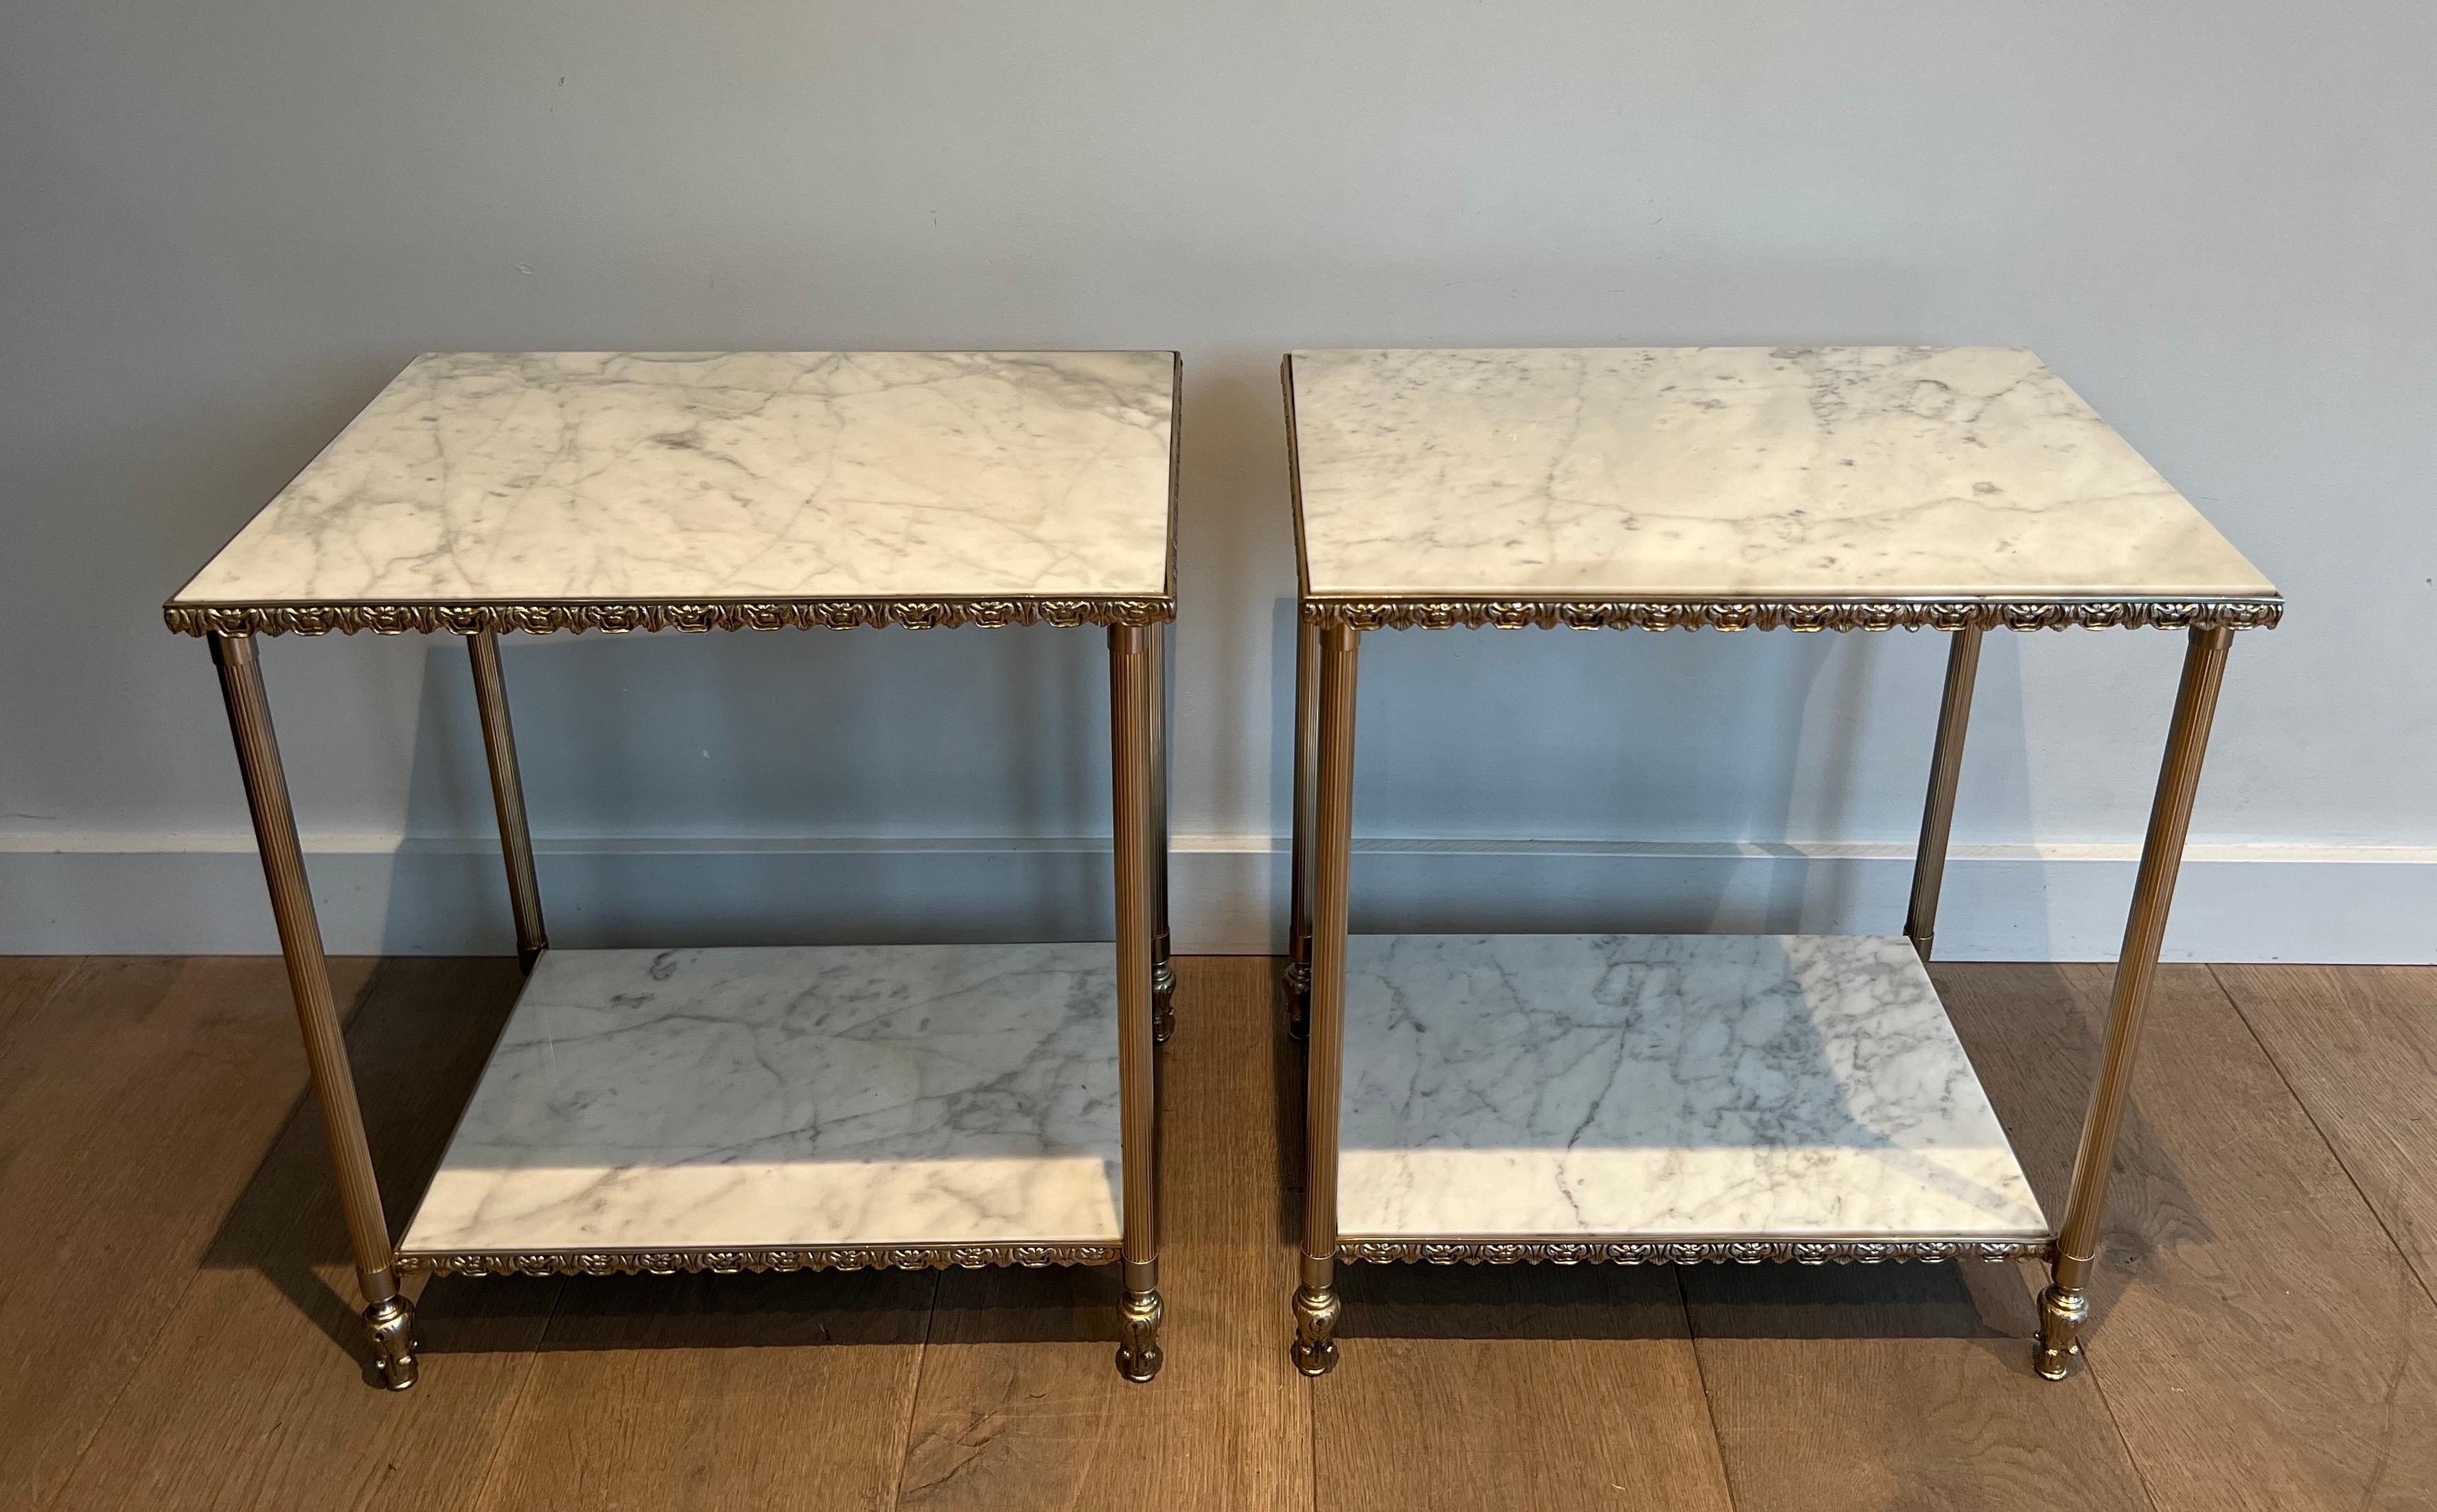 Cette très belle et inhabituelle paire de tables d'appoint est fabriquée en métal argenté avec des plateaux en marbre de Carrare. Il s'agit d'une œuvre française dans le style de la Maison Jansen. Circa 1940